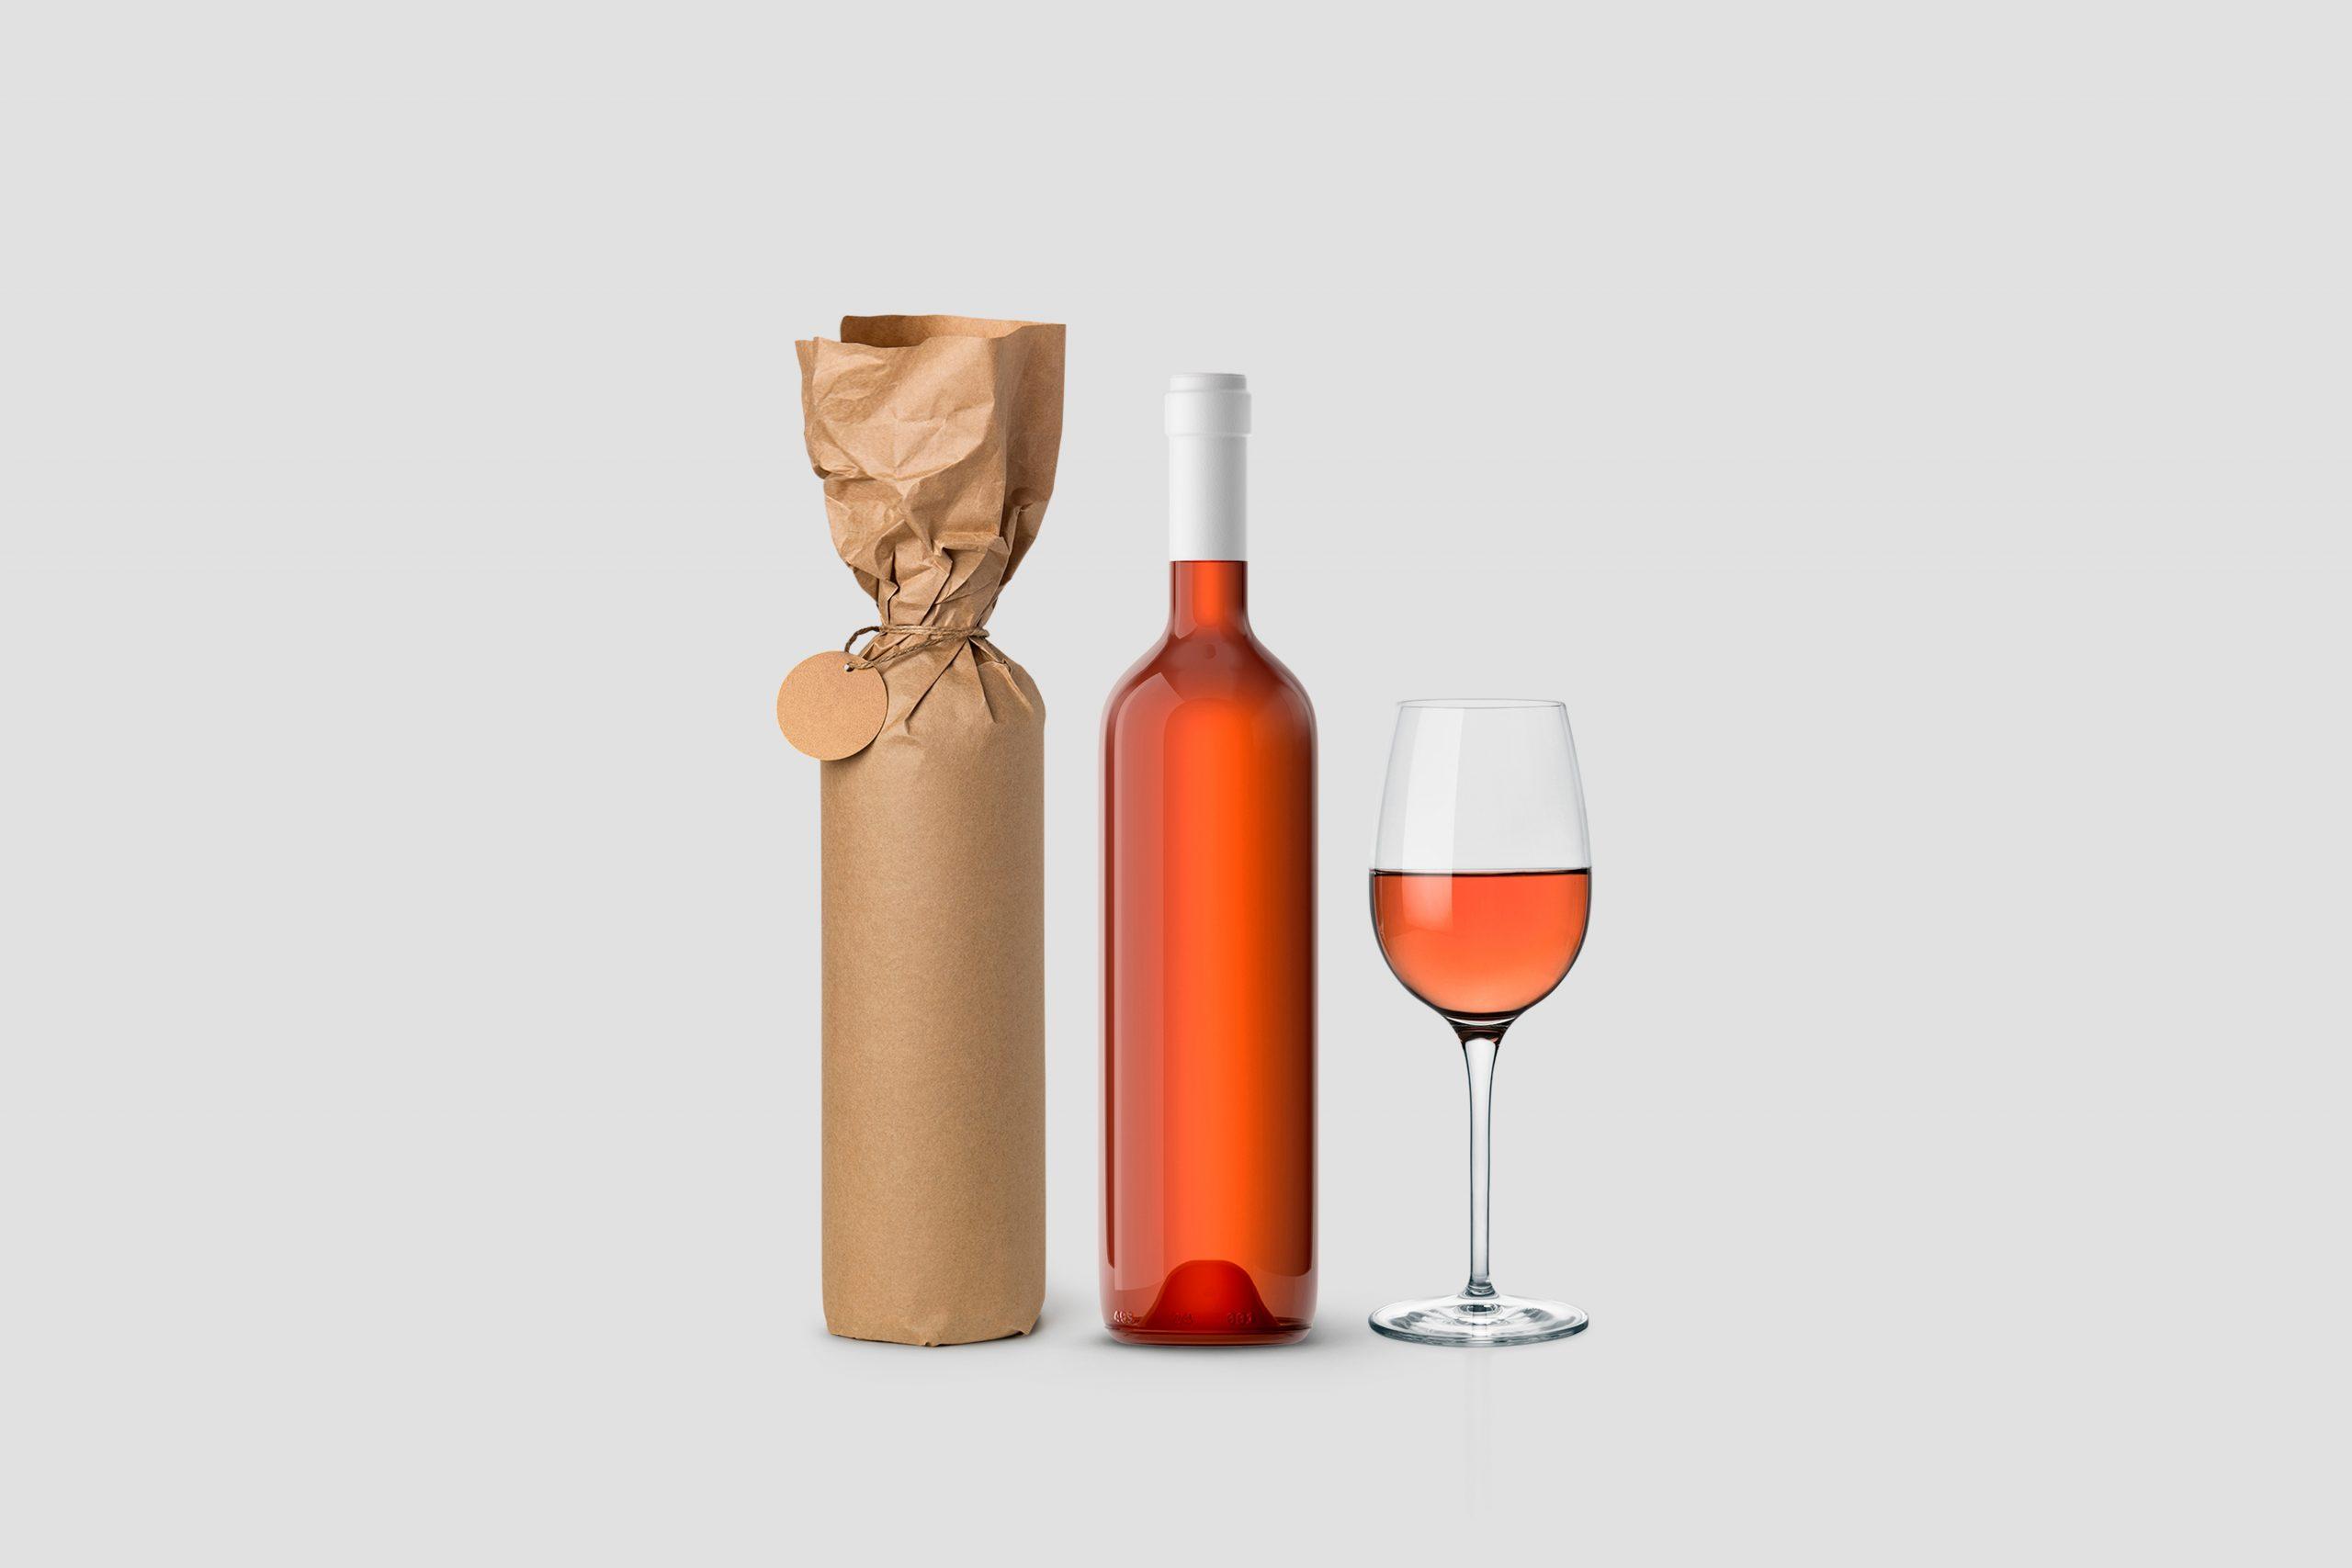 Weinflasche in Papier eingewickelt mit Etikett und Glas auf weissem Hintergrund